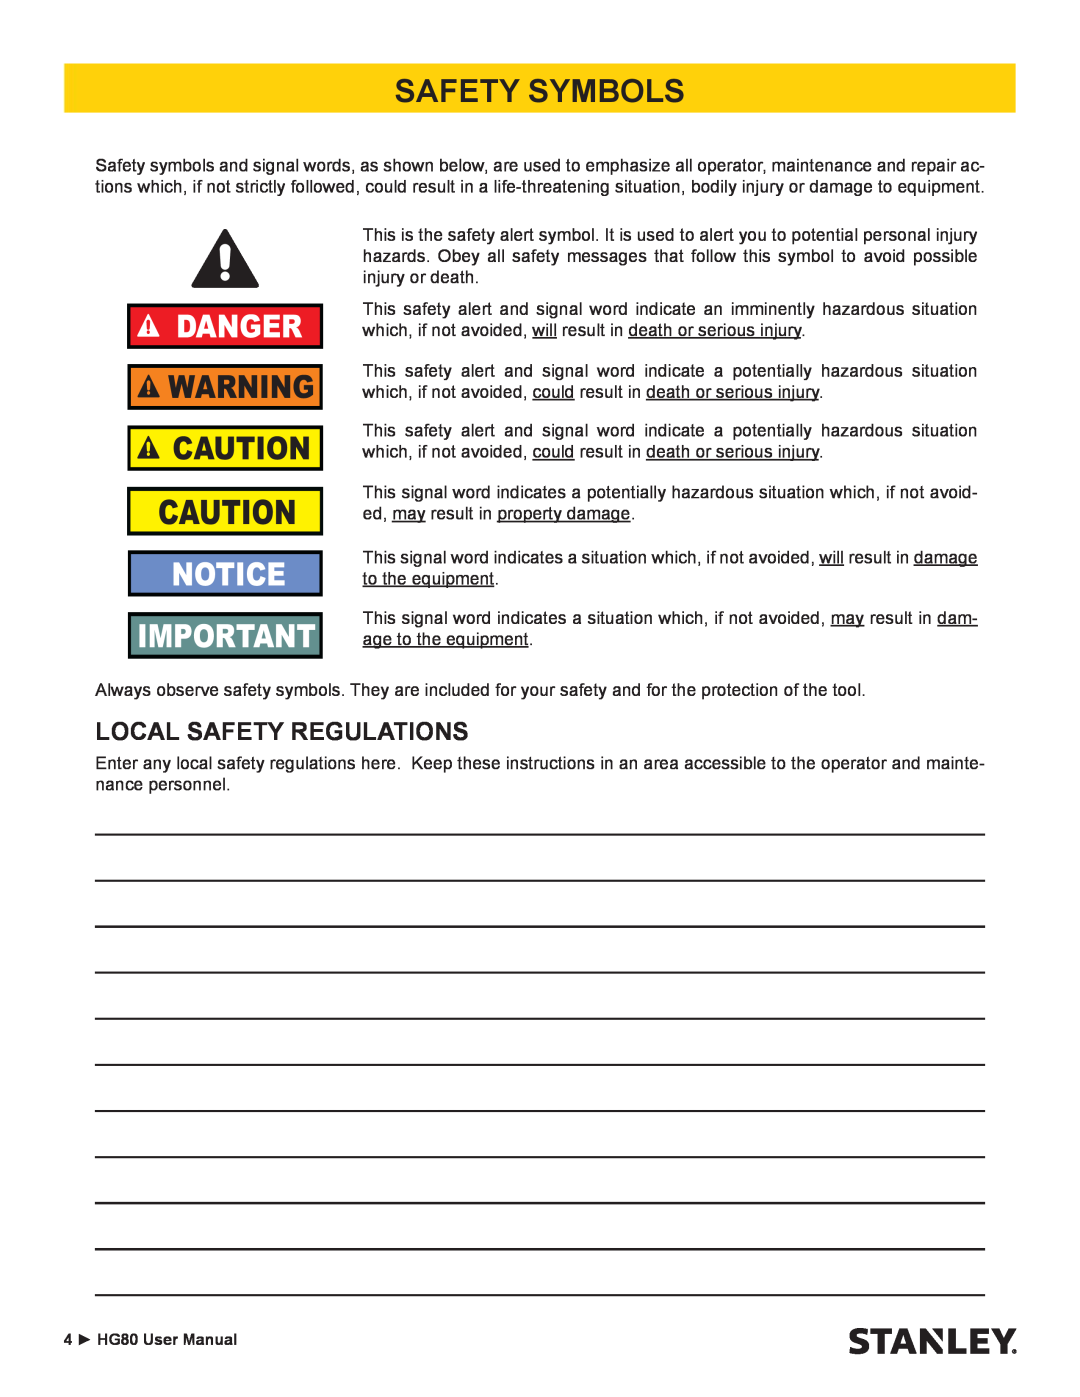 Stanley Black & Decker HG80 manual Safety Symbols, Local Safety Regulations, Danger 